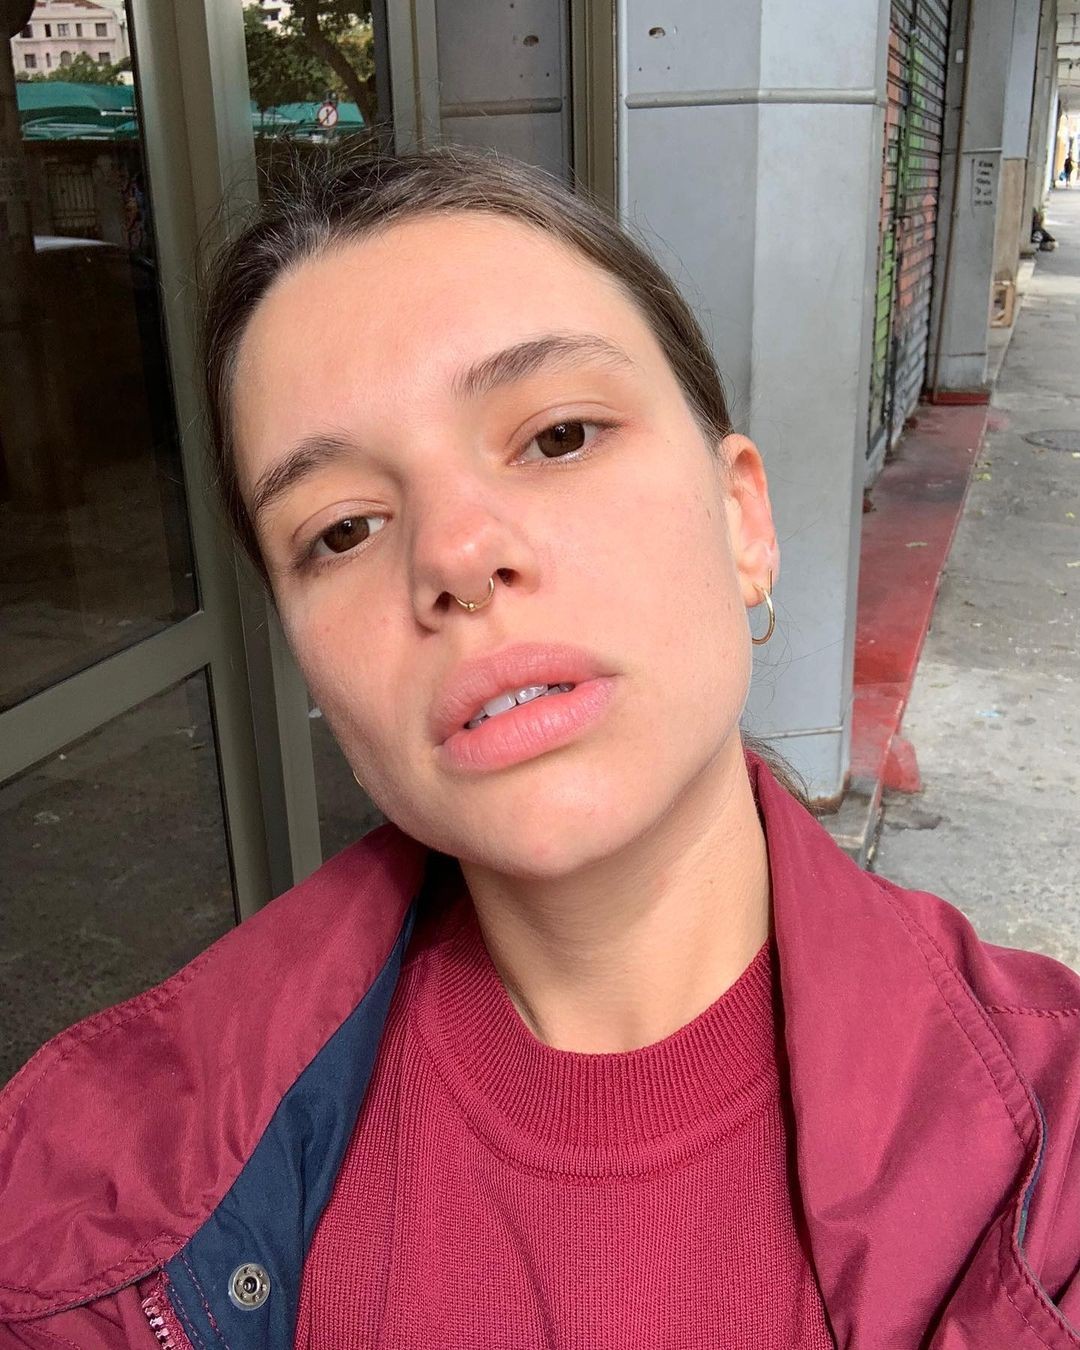 Bruna Linzmeyer intrigou seguidores ao compartilhar clique em que aparece de olho castanho (Foto: Reprodução/Instagram)